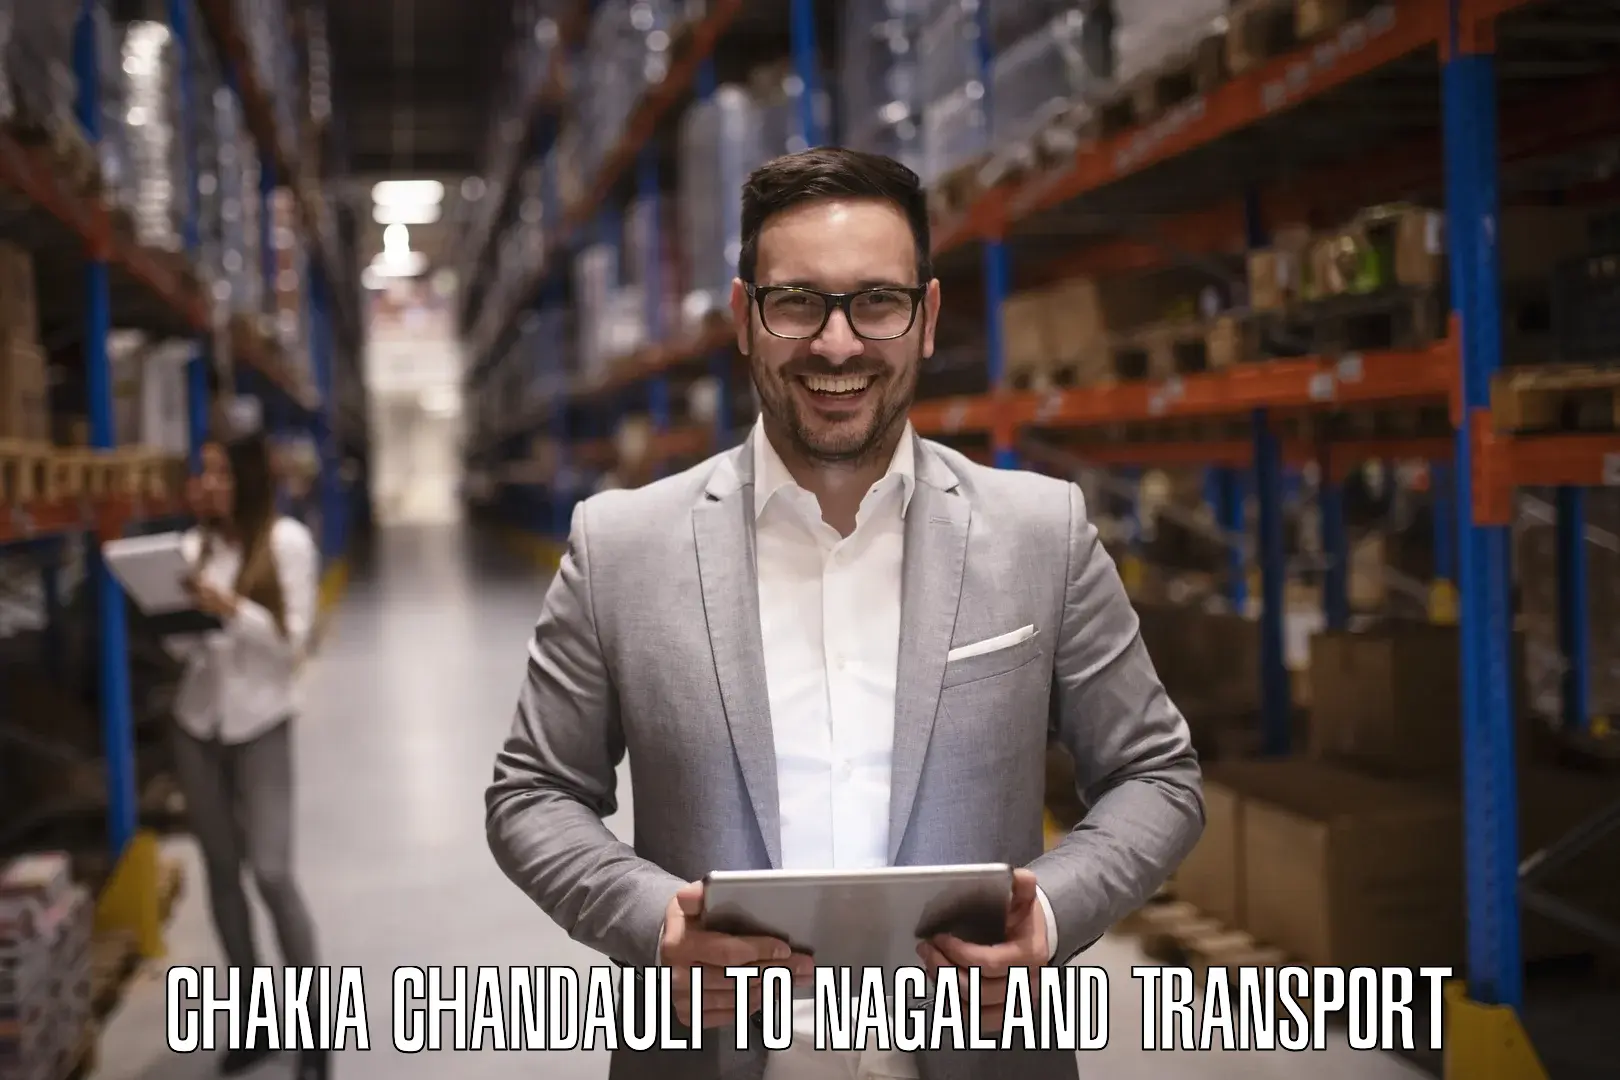 Furniture transport service Chakia Chandauli to Nagaland